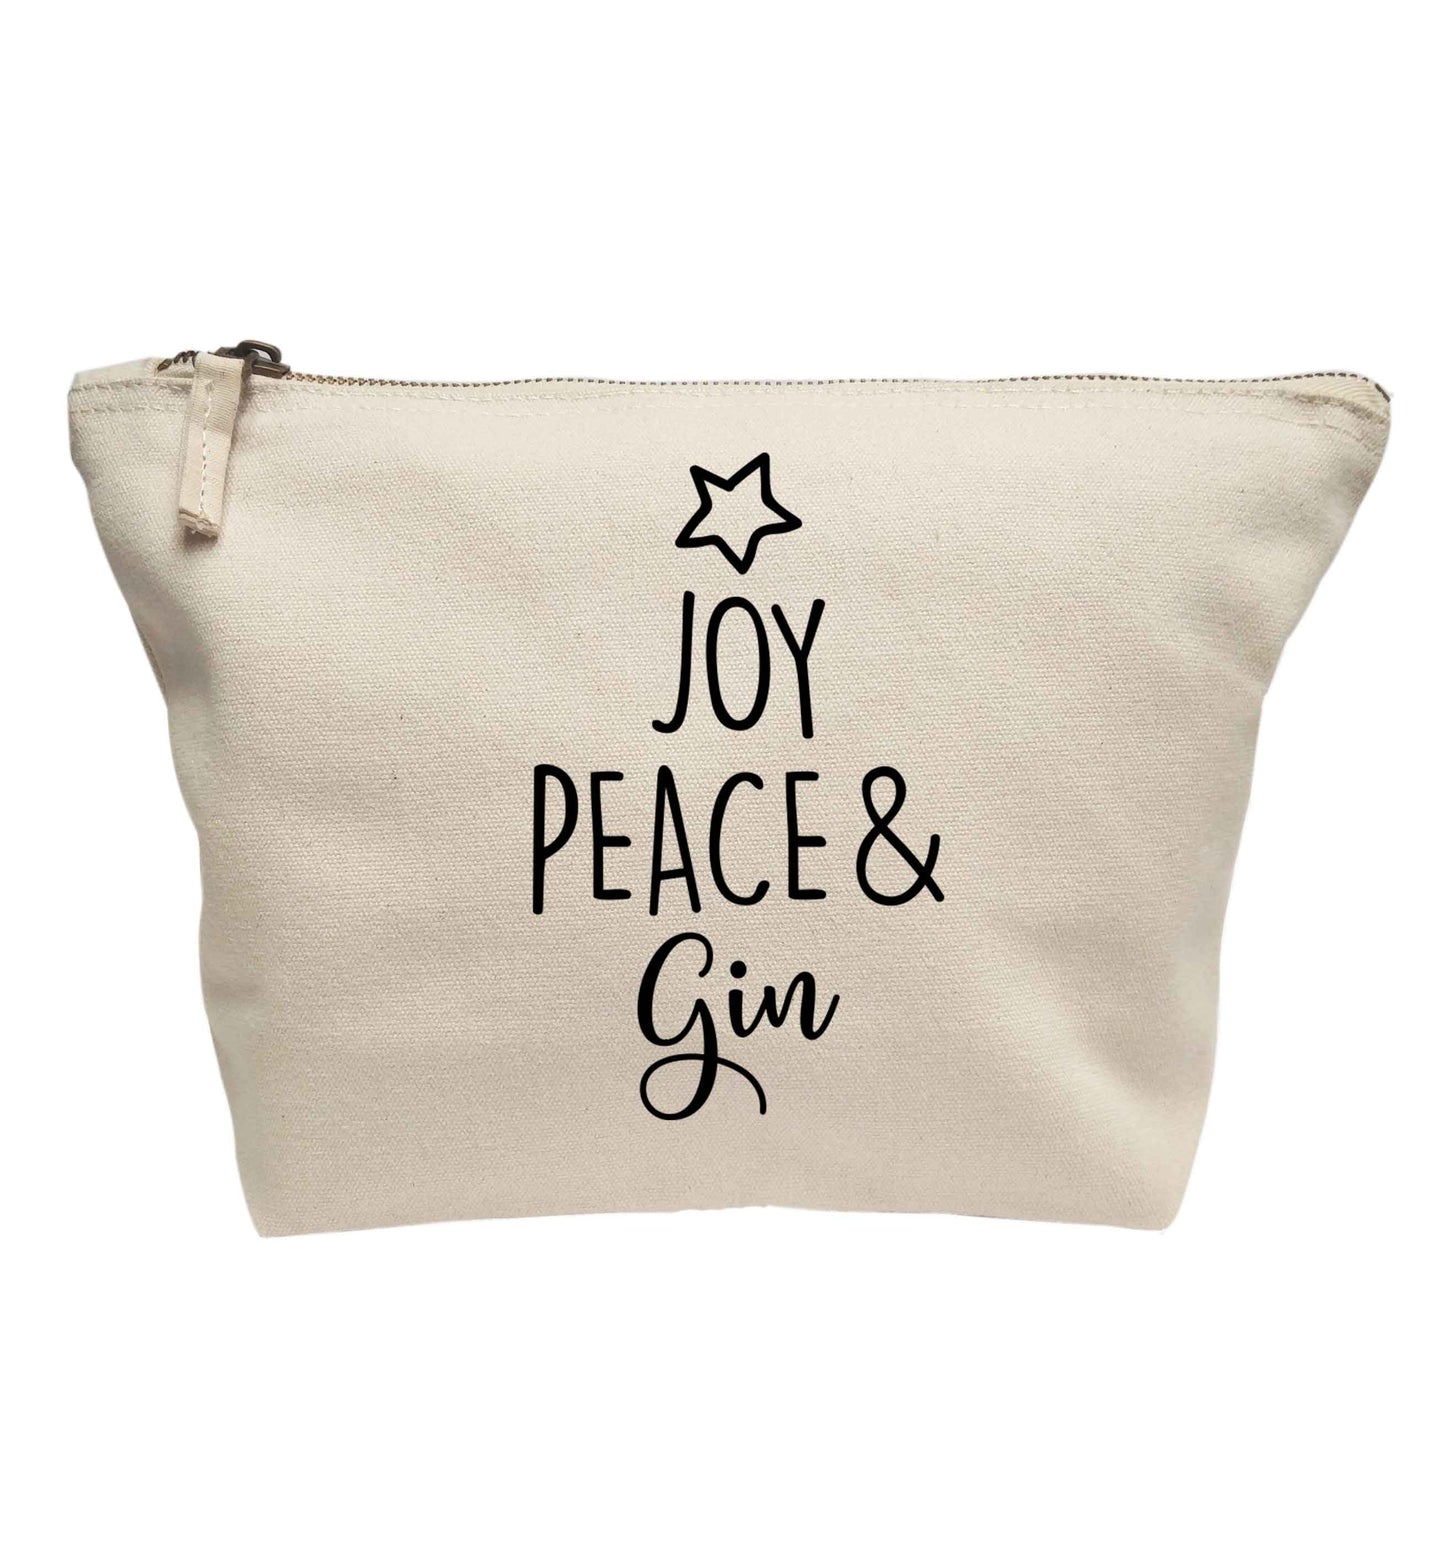 Joy peace and gin | makeup / wash bag